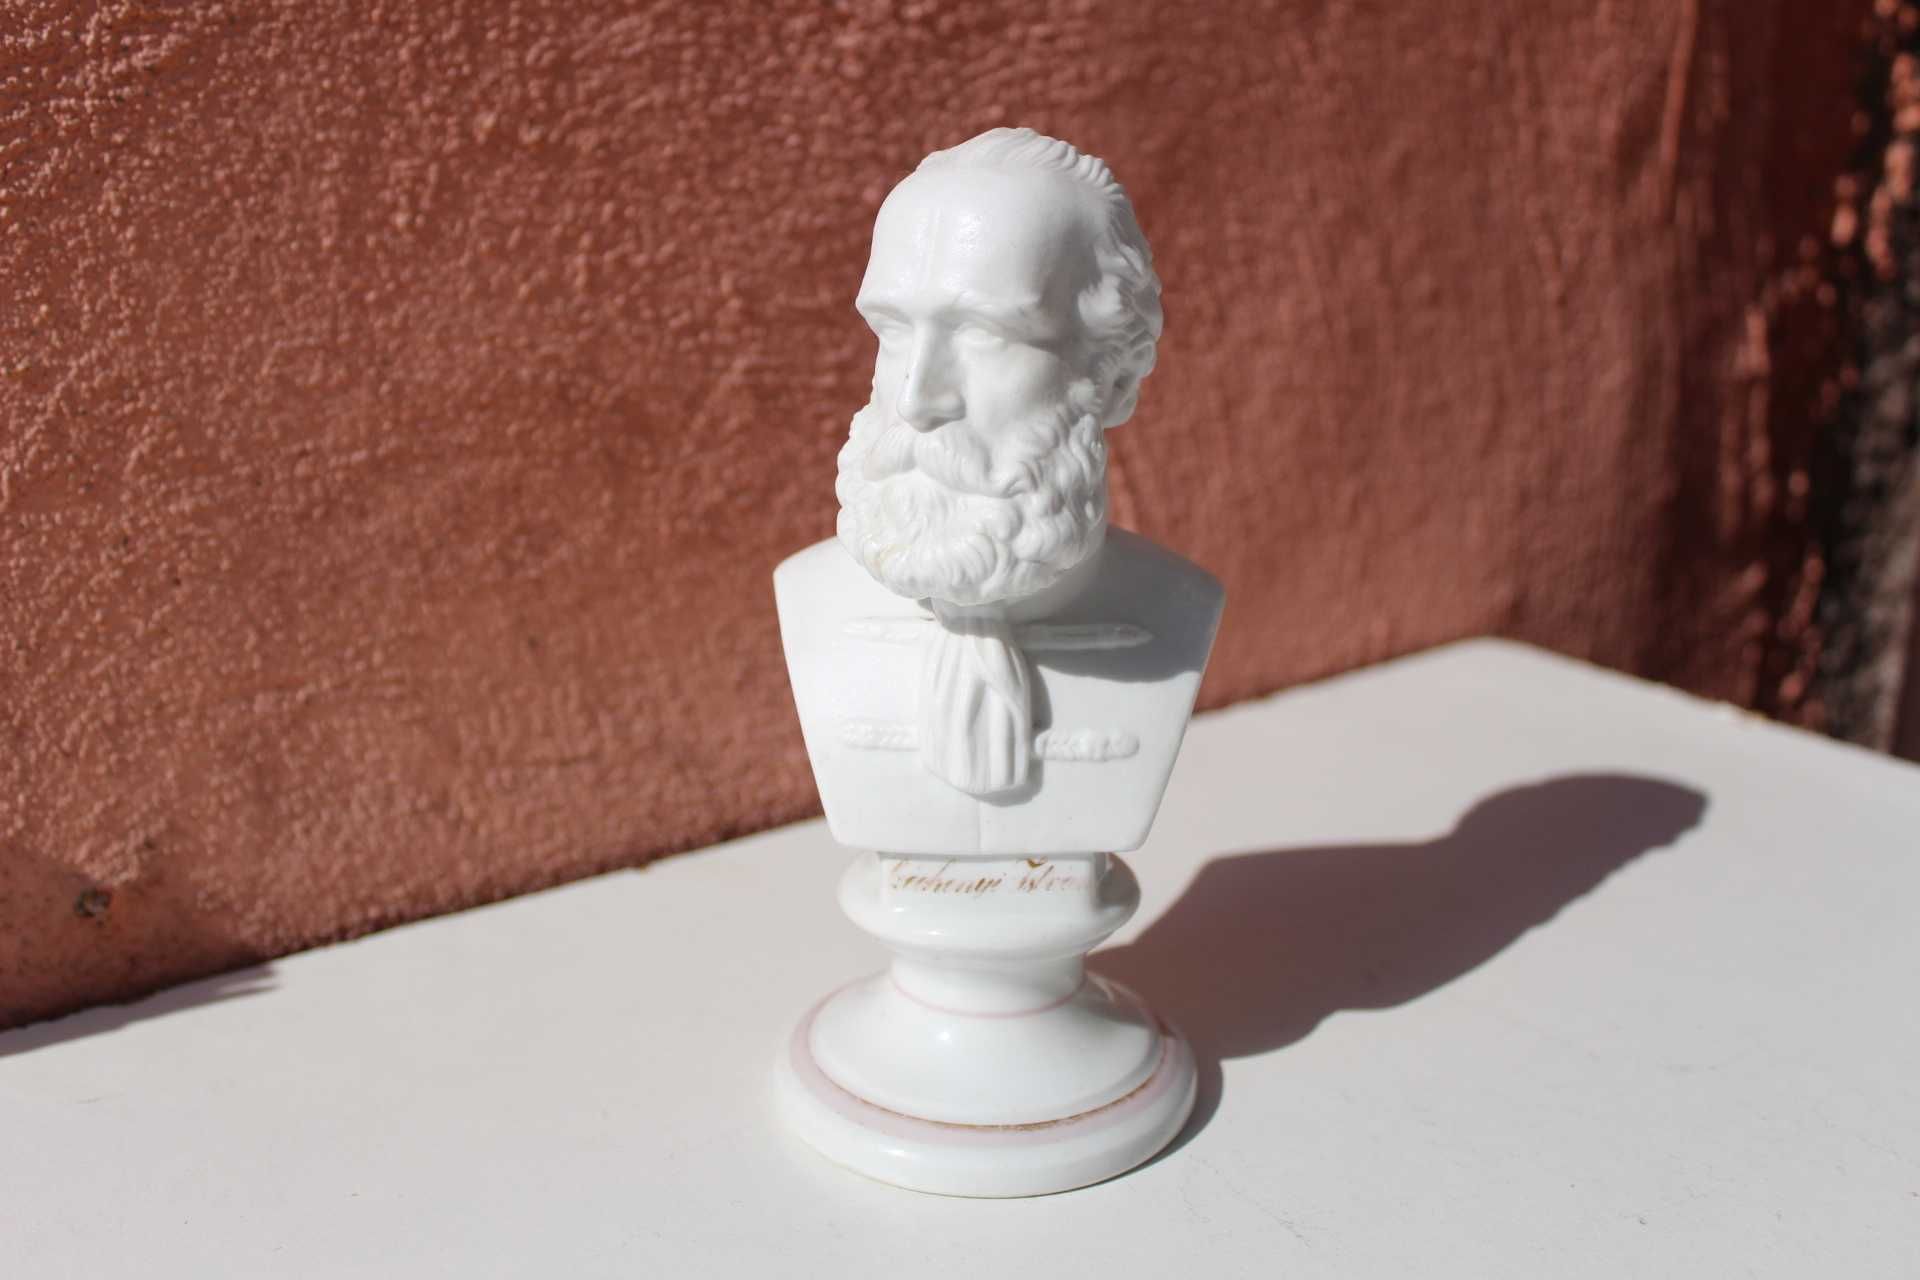 Sculptura István Széchenyi bust ceramic Ungaria